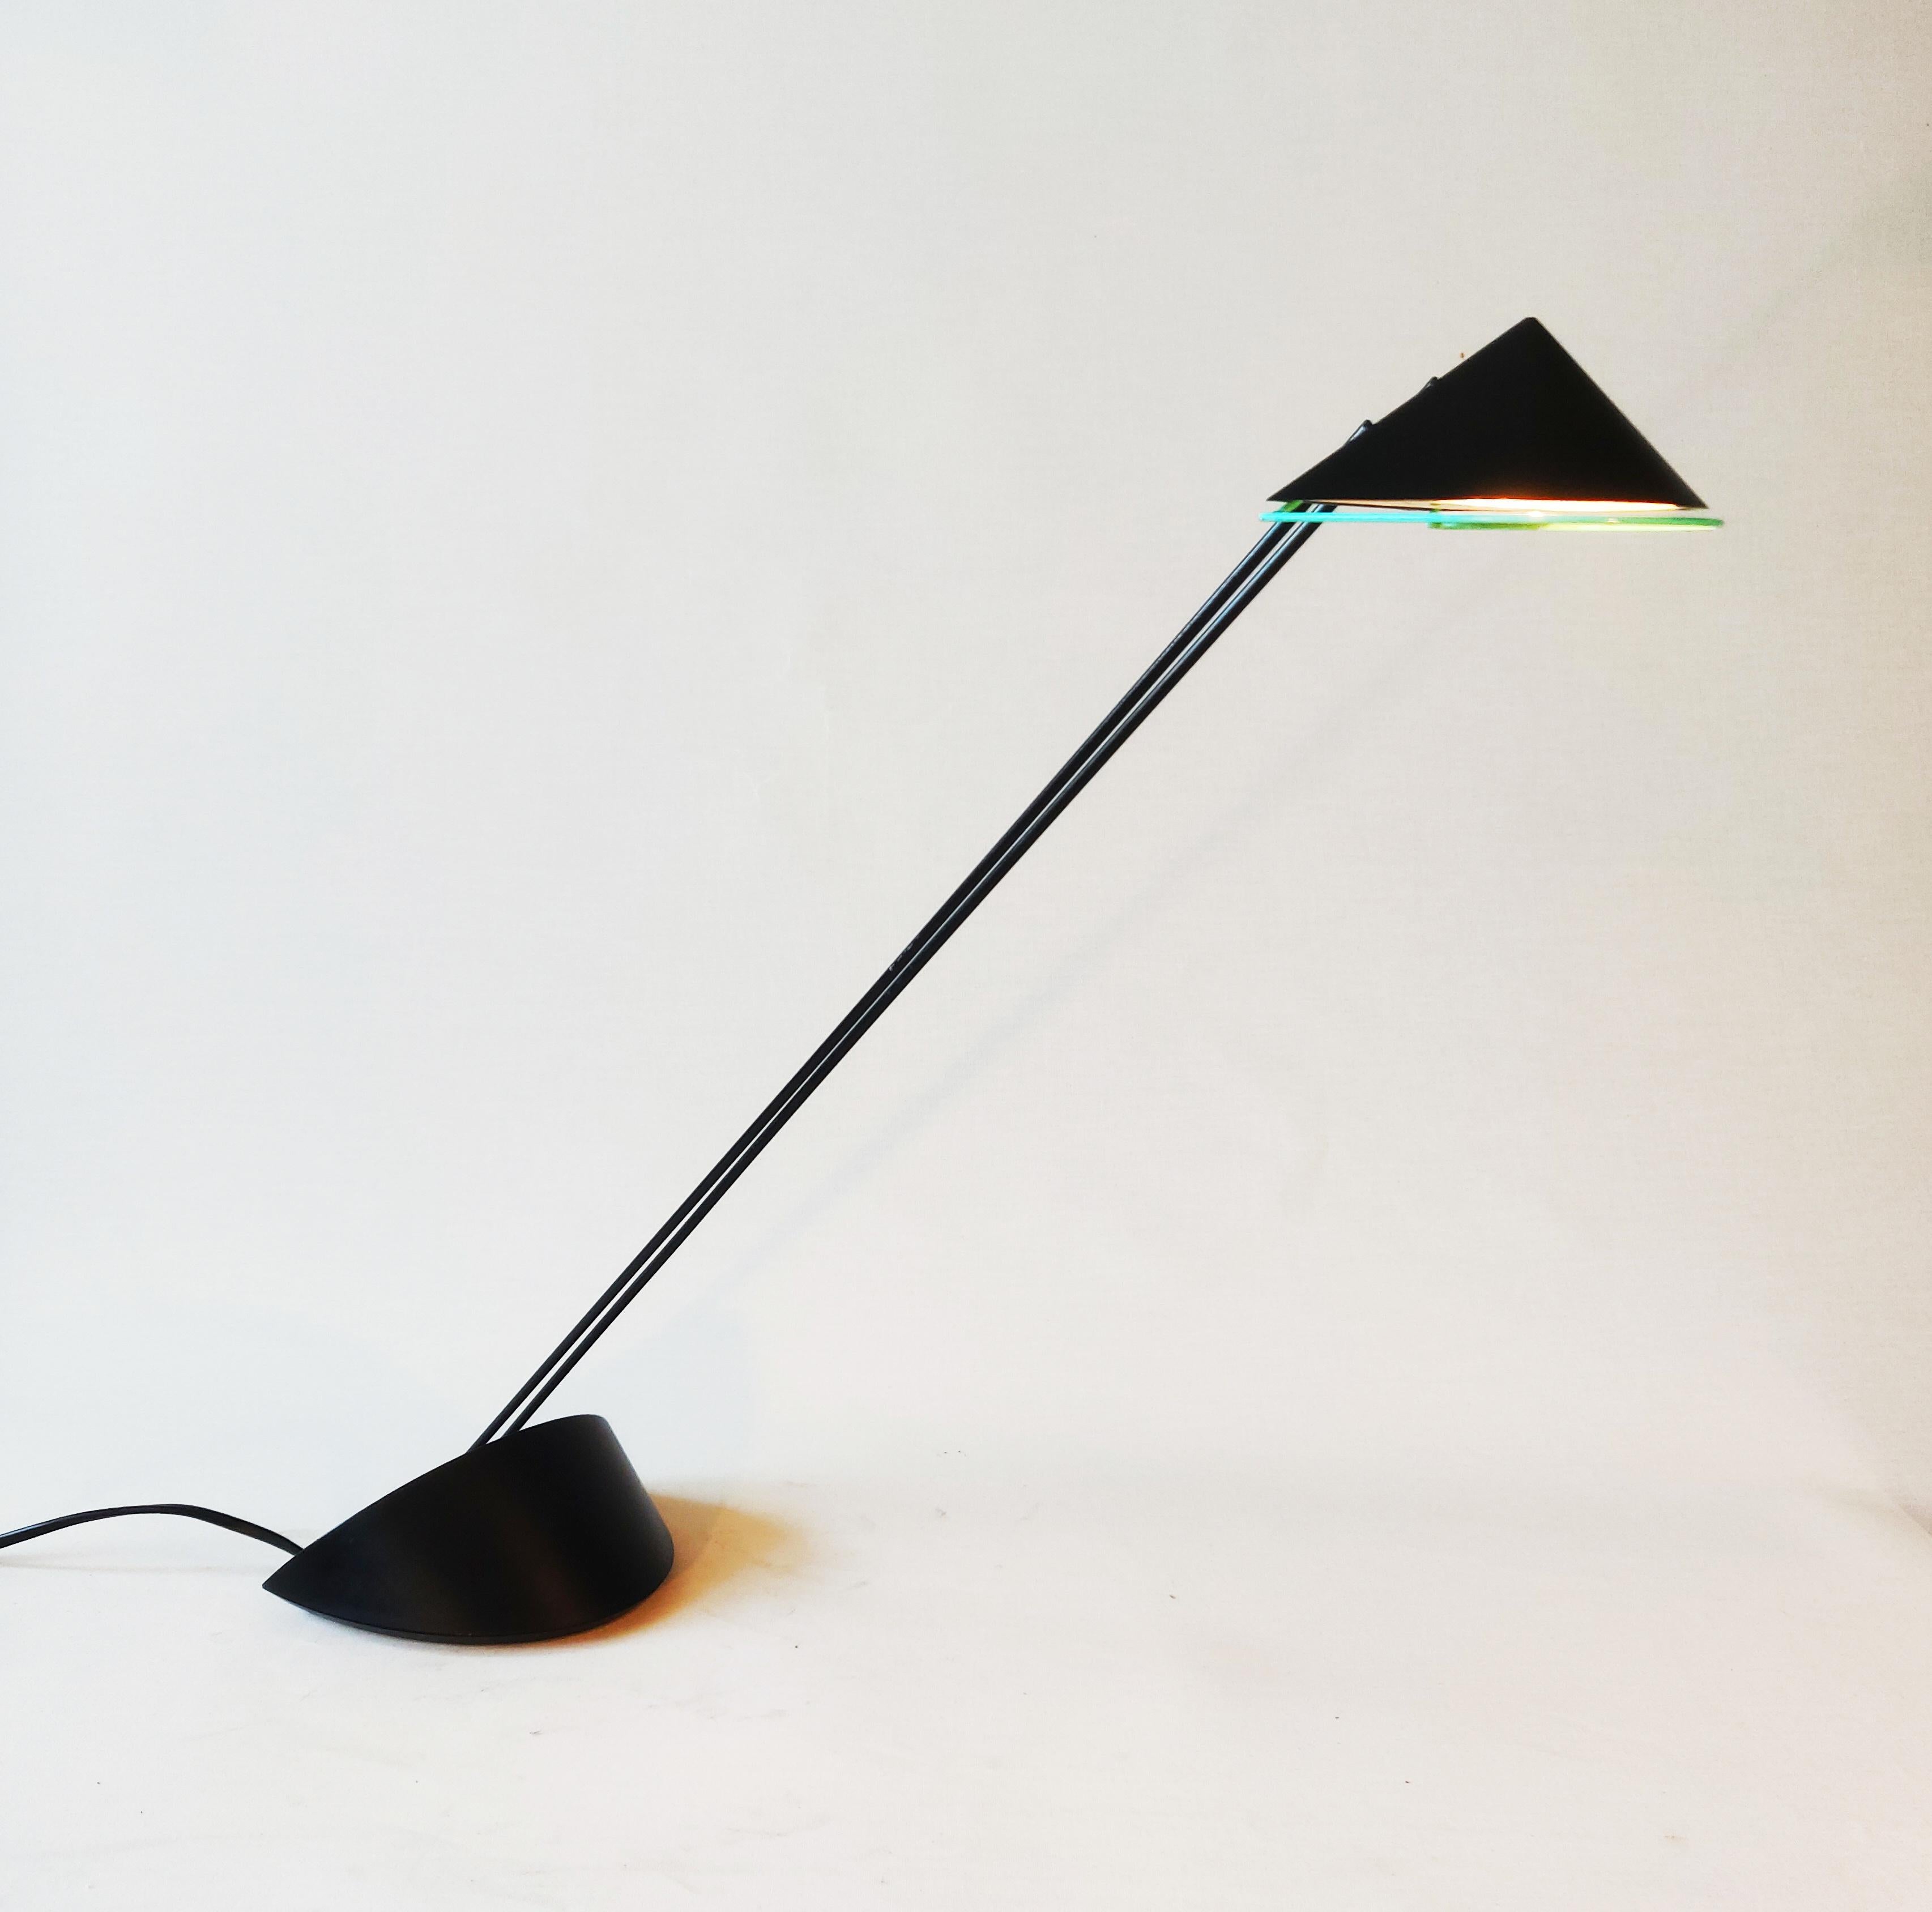 Il s'agit d'une lampe Priola Design/One des années 80. Cette lampe a été conçue par le designer néerlandais Ad van Berlo et produite par Indoor Amsterdam. La lampe a un bord vert pastel sous l'abat-jour et le bouton d'allumage et d'extinction est